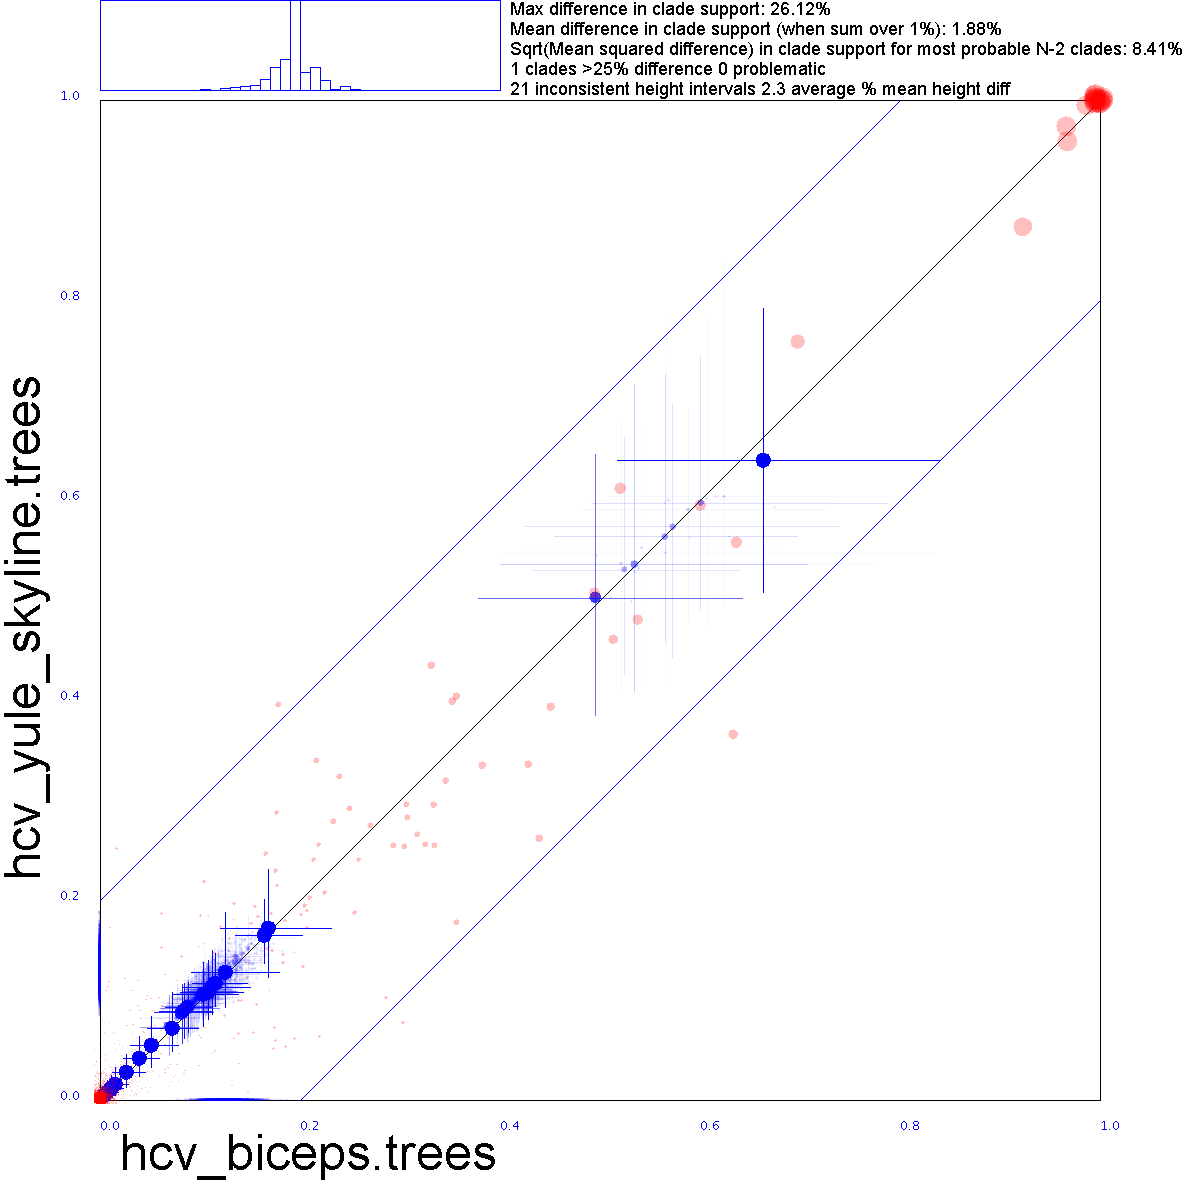 BICEPS vs Yule skyline trees